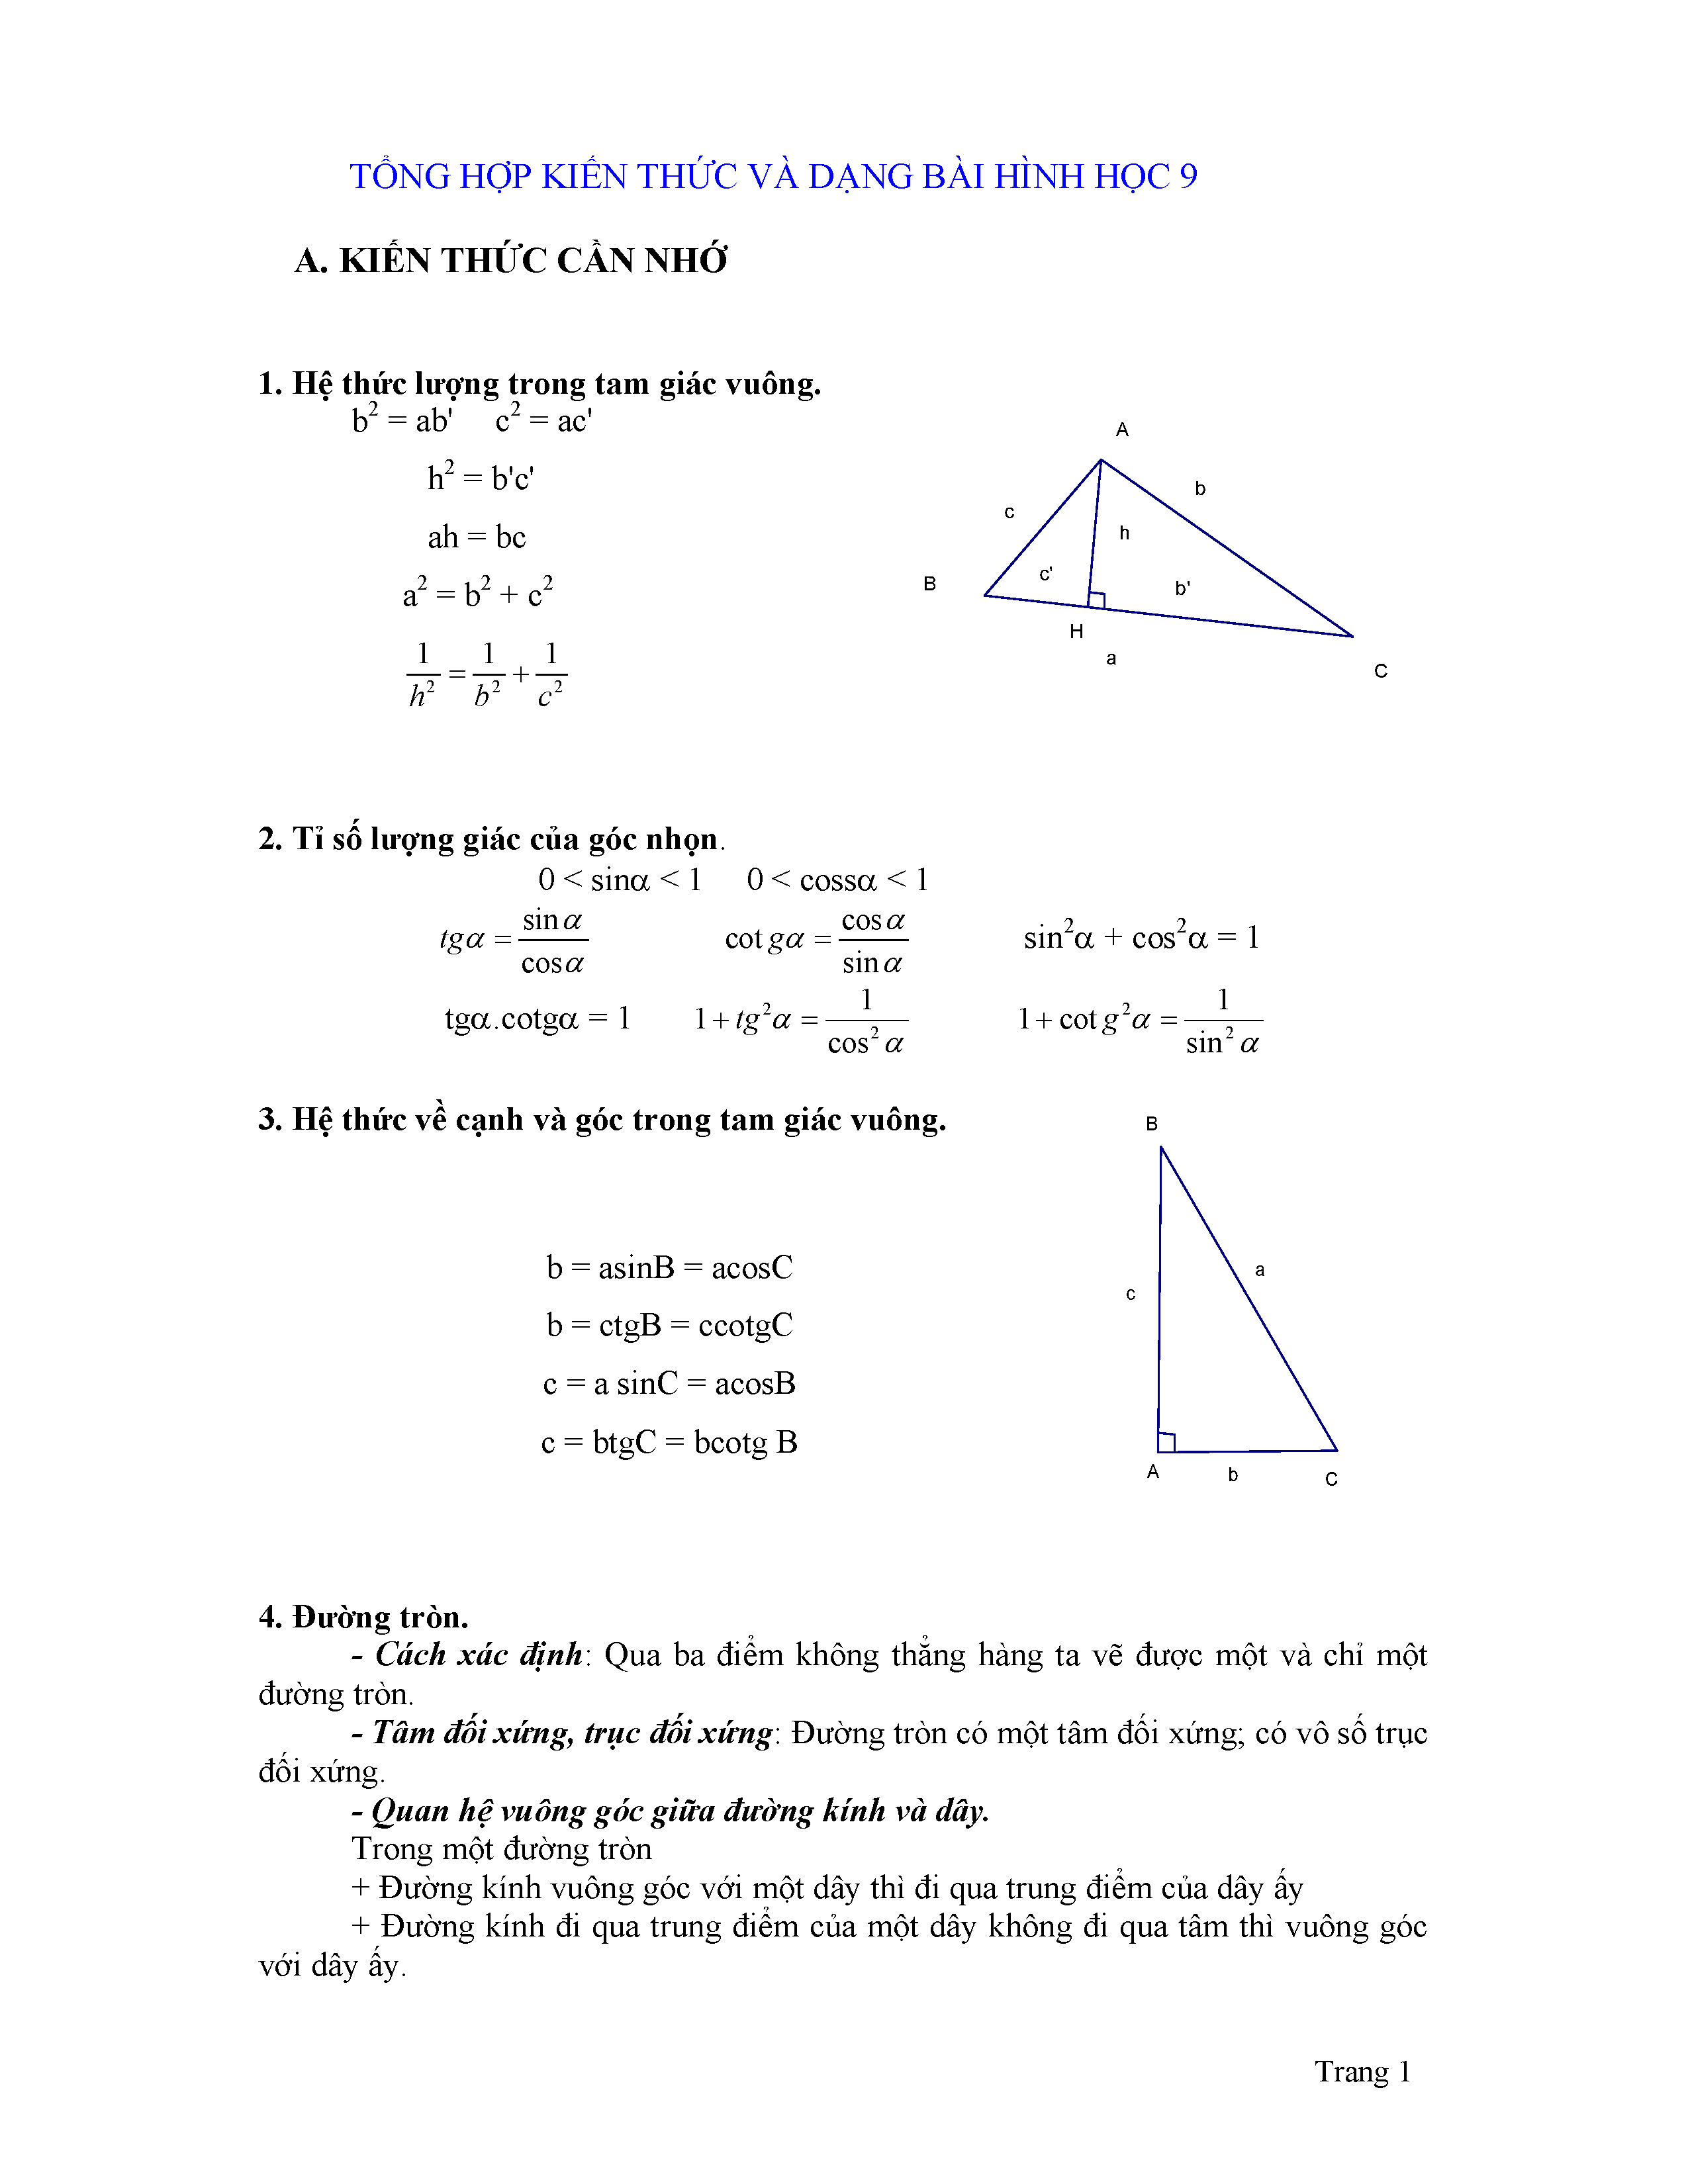 Tổng hợp các định lý hình học lớp 9 hoàn chỉnh và đầy đủ